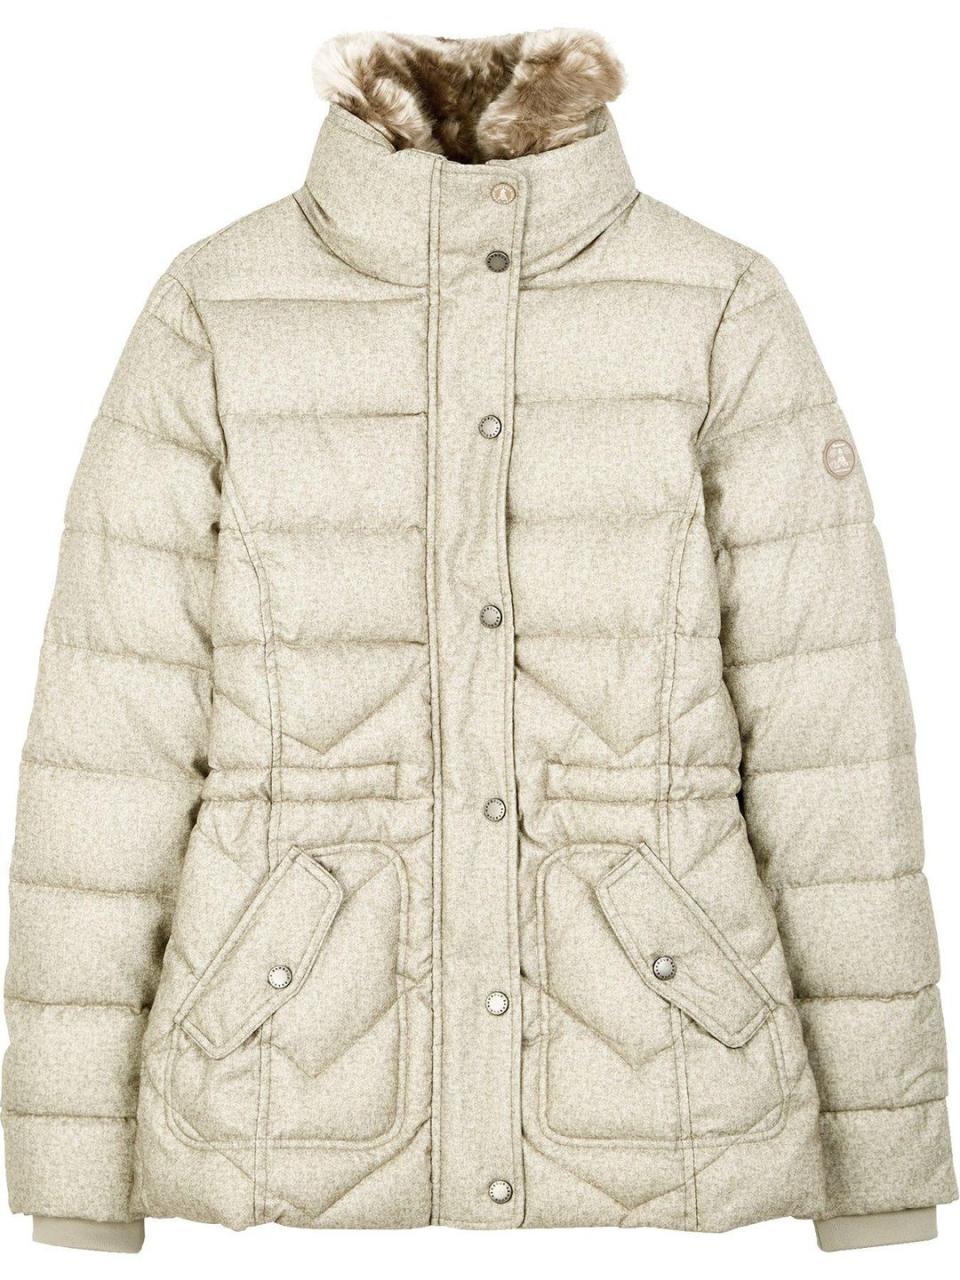 Best winter coats 2019